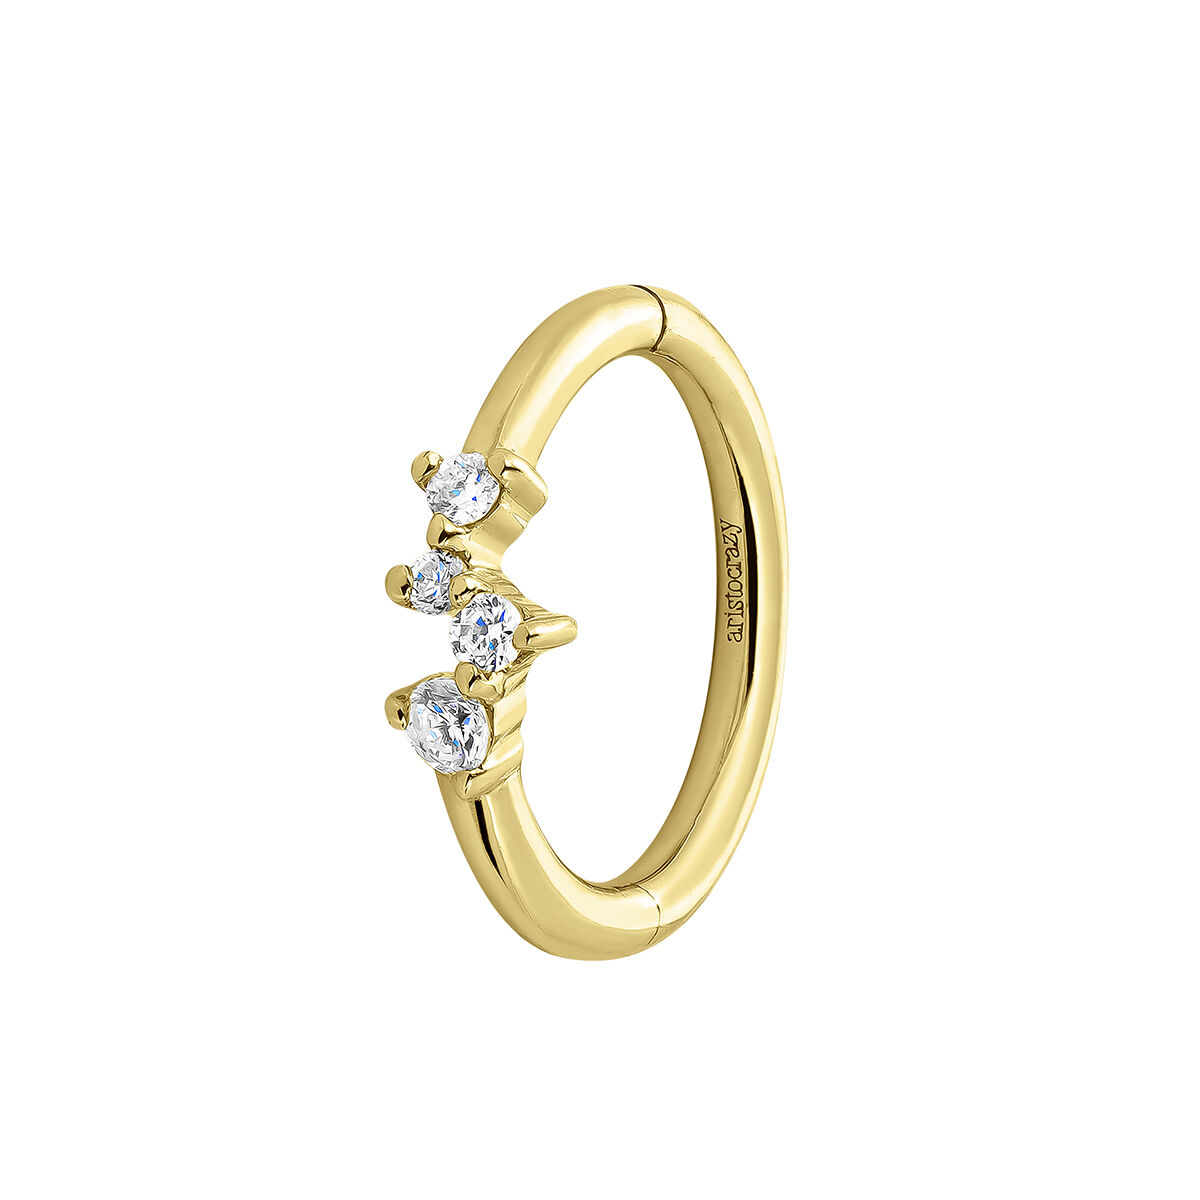 Petite boucle d’oreille créole à l’unité en or jaune 9 ct avec des diamants de 0,035 ct, J04958-02-H, hi-res